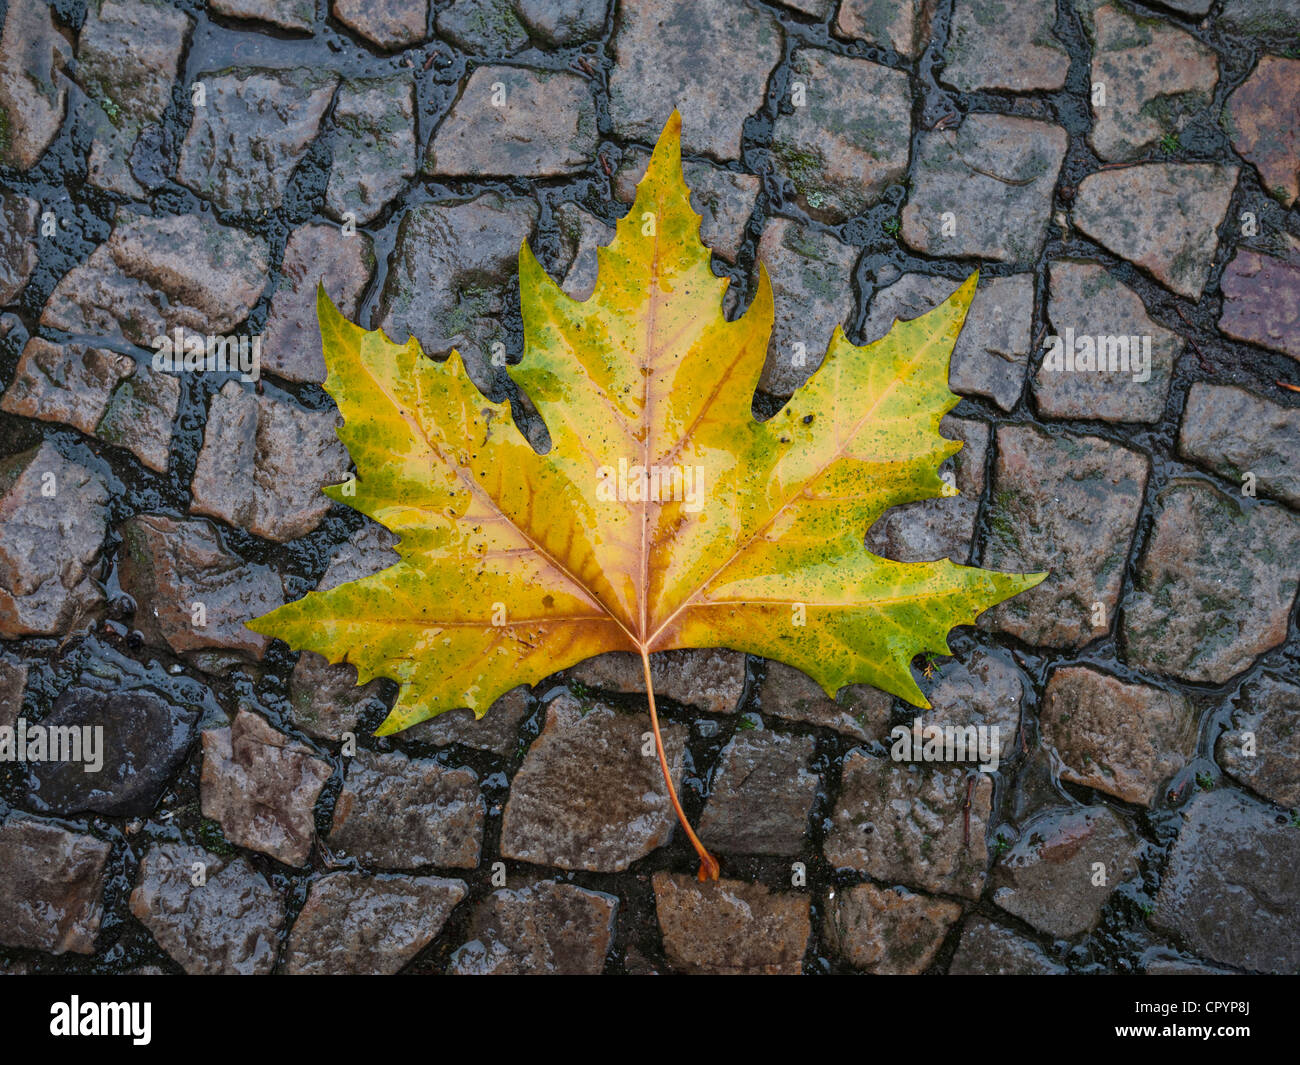 Autumnal feuille de platane (Platanus) sur une chaussée mouillée Banque D'Images